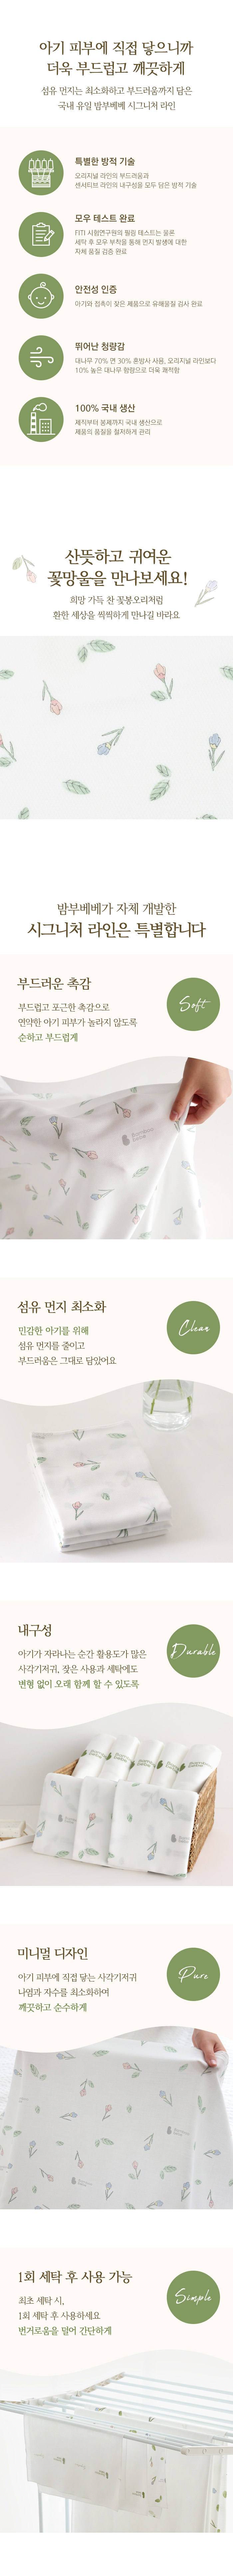 signature_cloth_diaper_flower_03.jpg